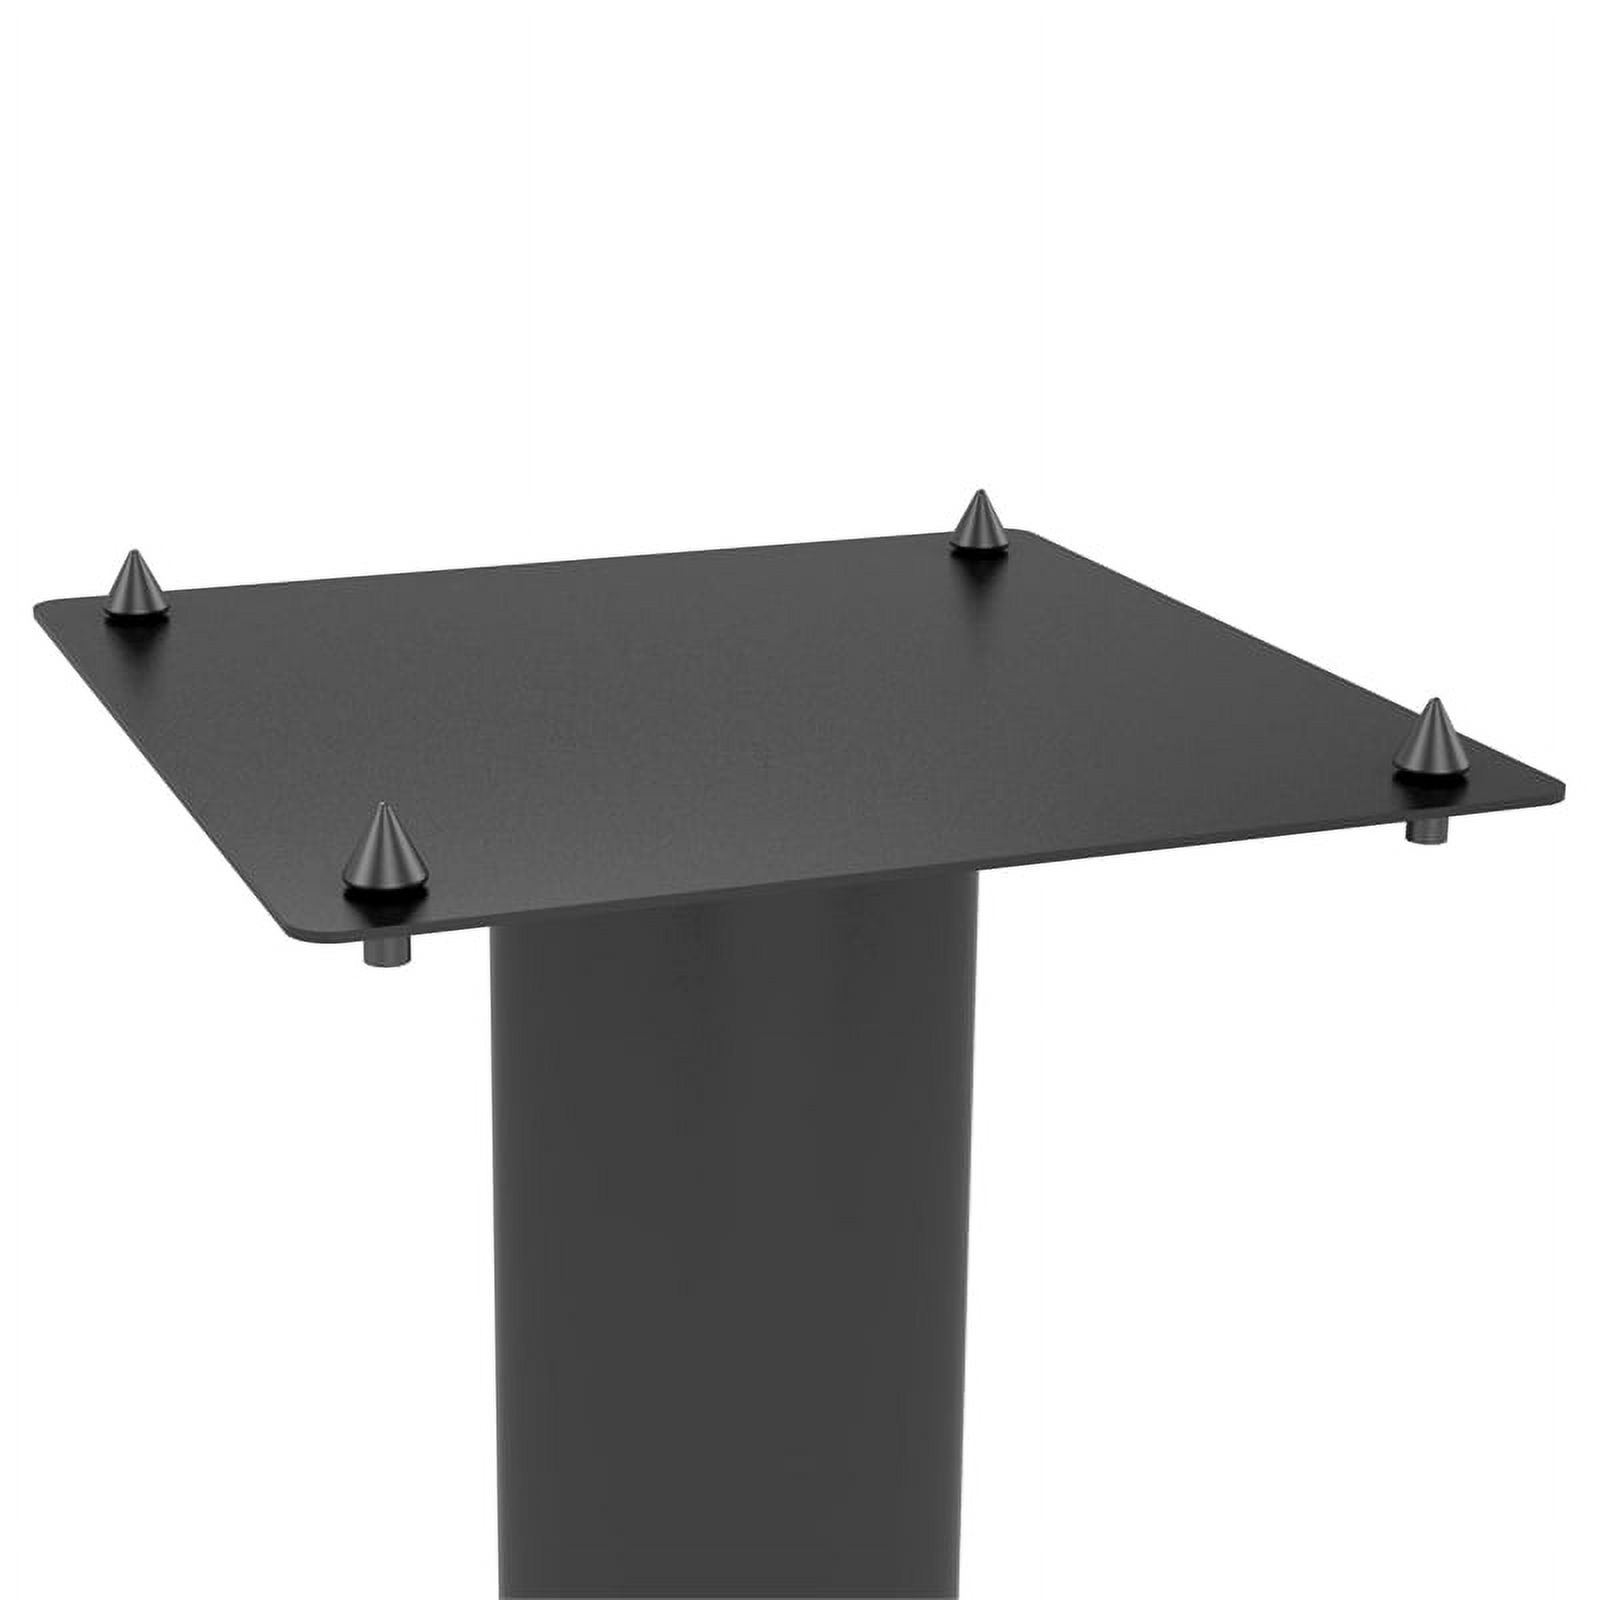 Atlantic Speaker Pedestal Stands, 10.5"W x 10.5"D x 30" H, Set of 2, Carbon Fiber Black - image 4 of 8